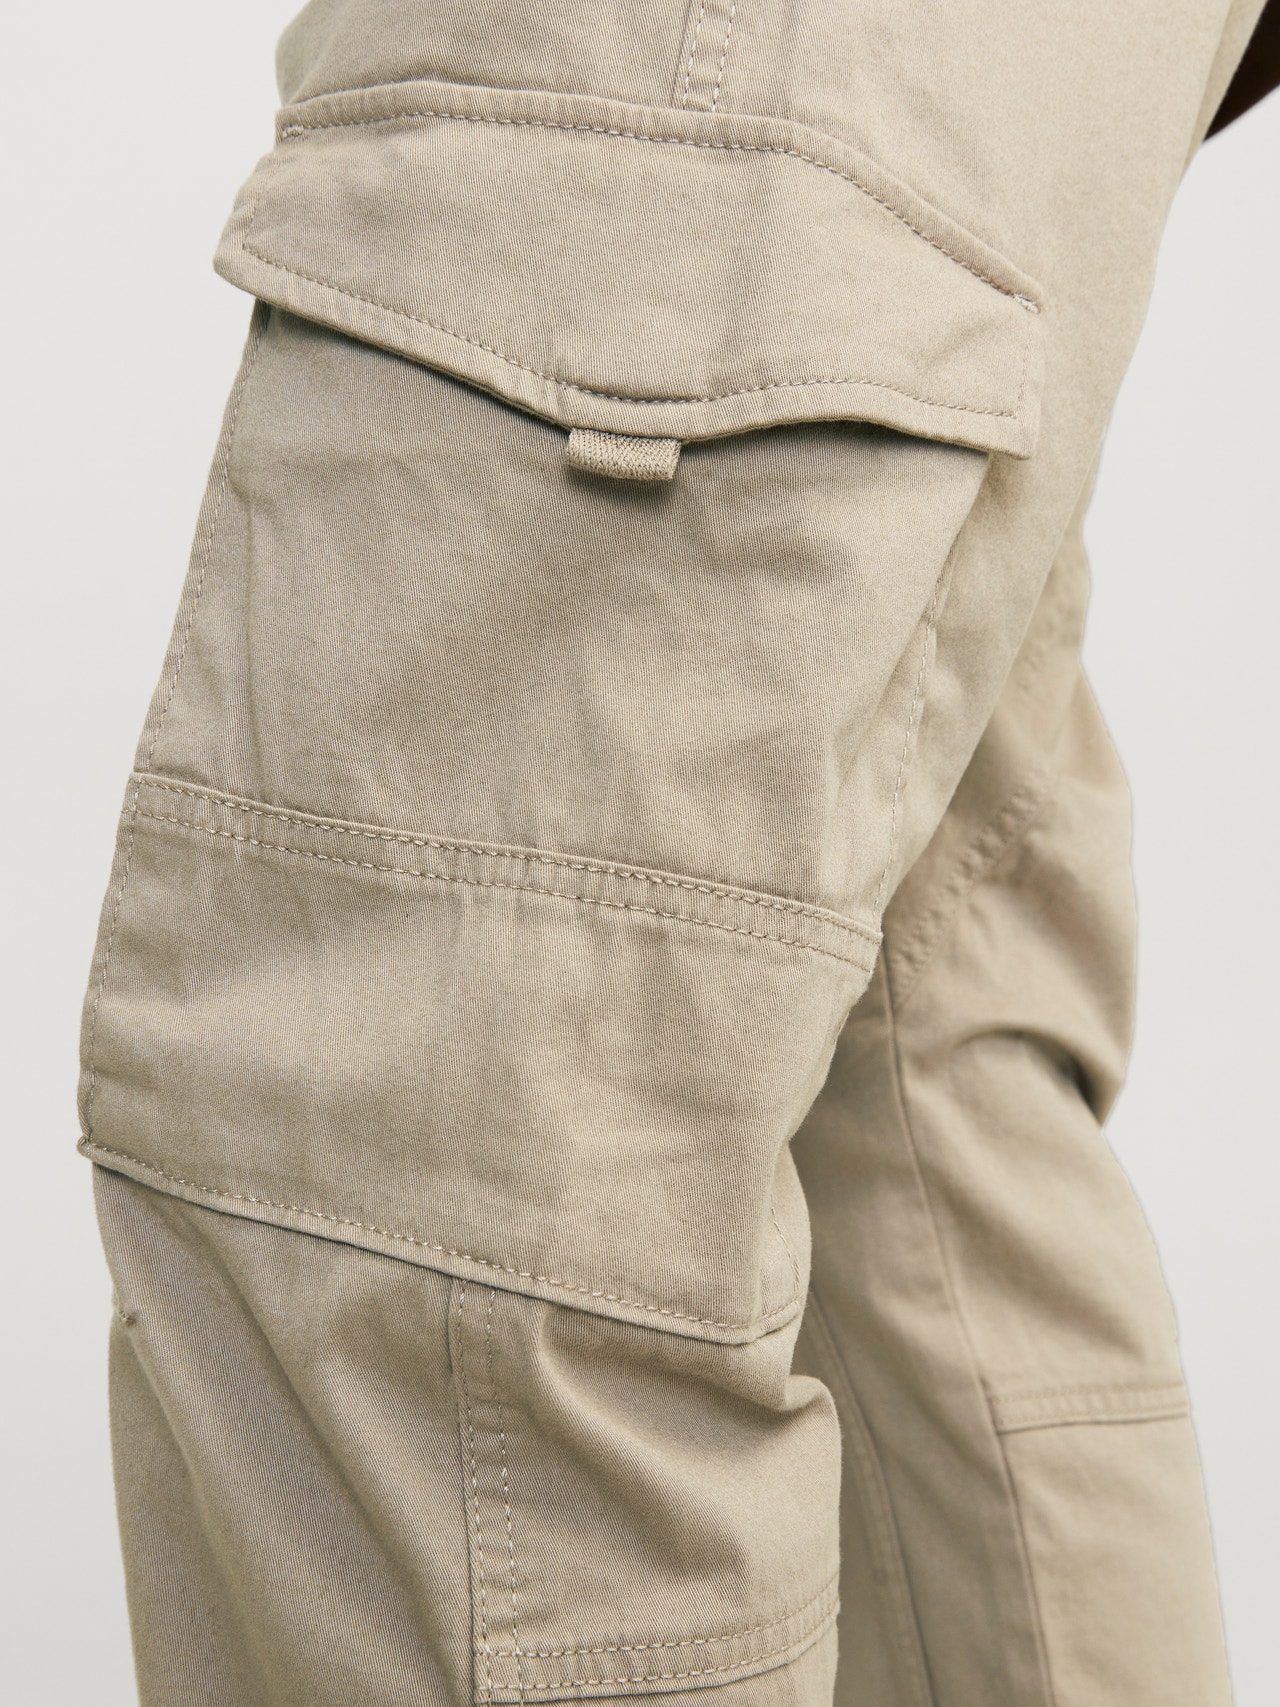 Xanthe Pocket Cargo Trousers in Beige